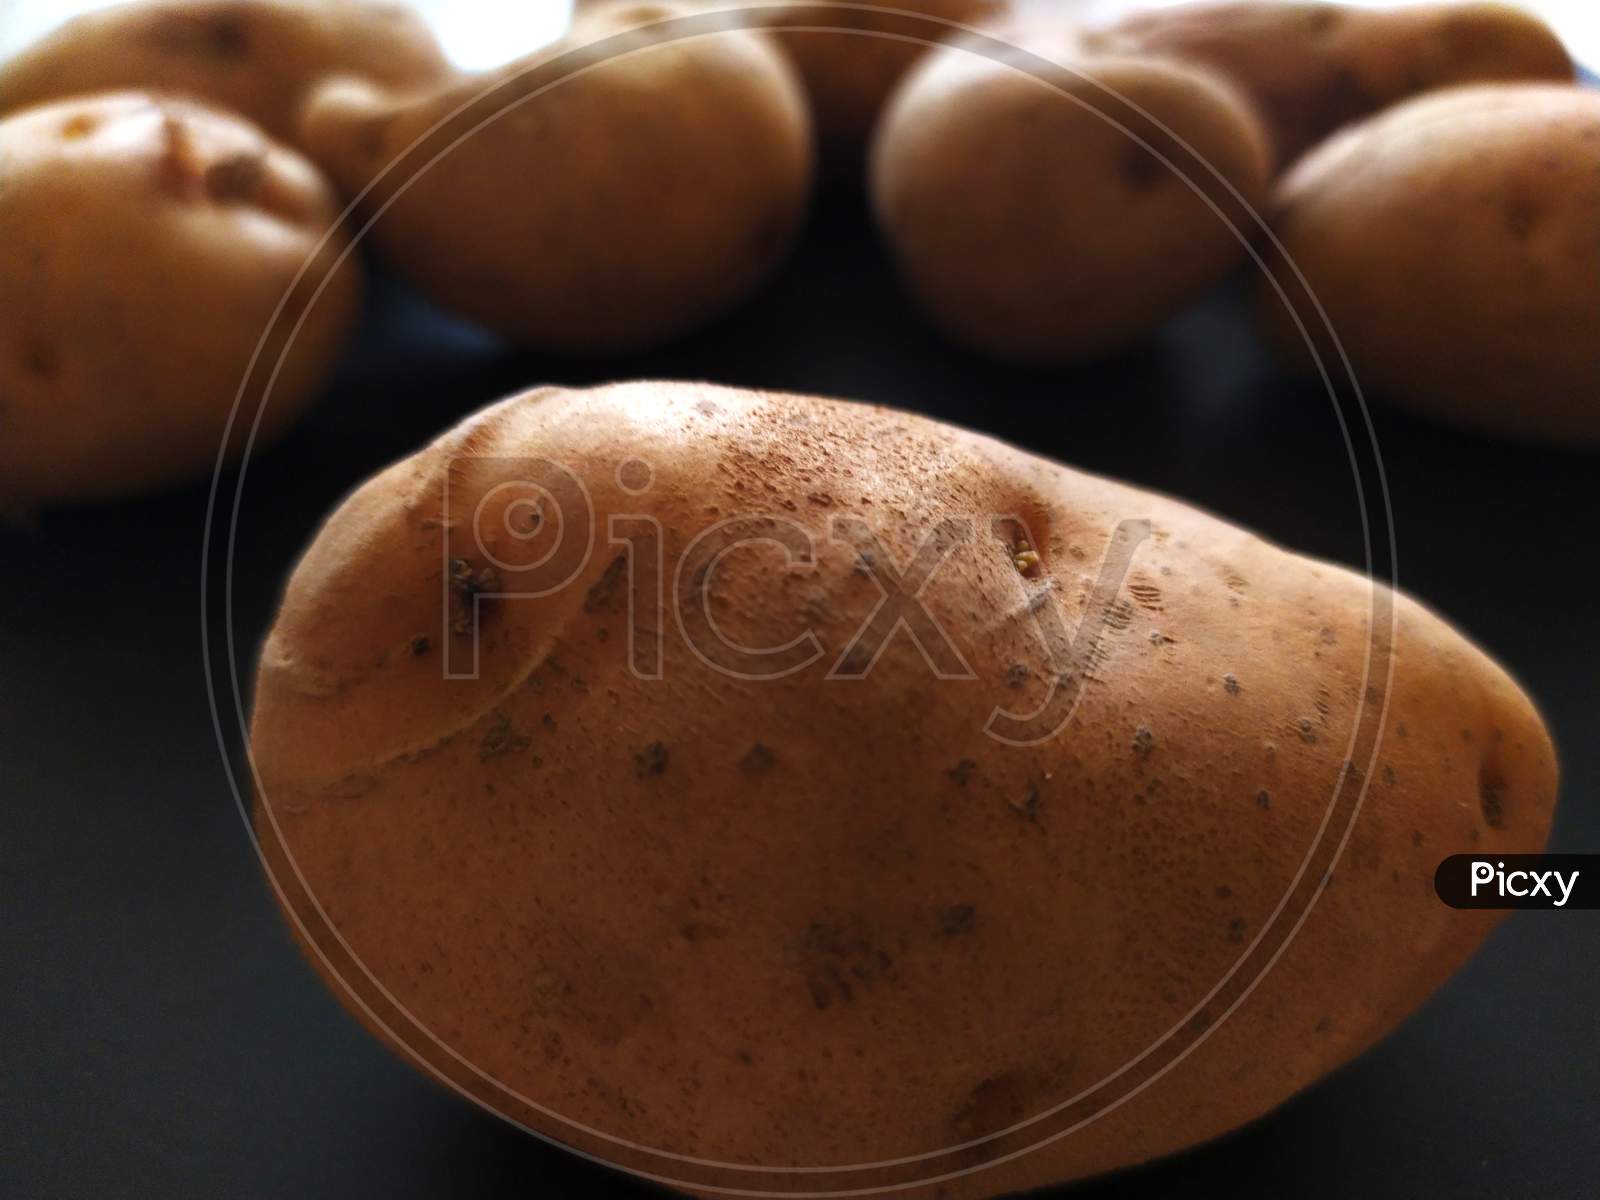 Potato Background image